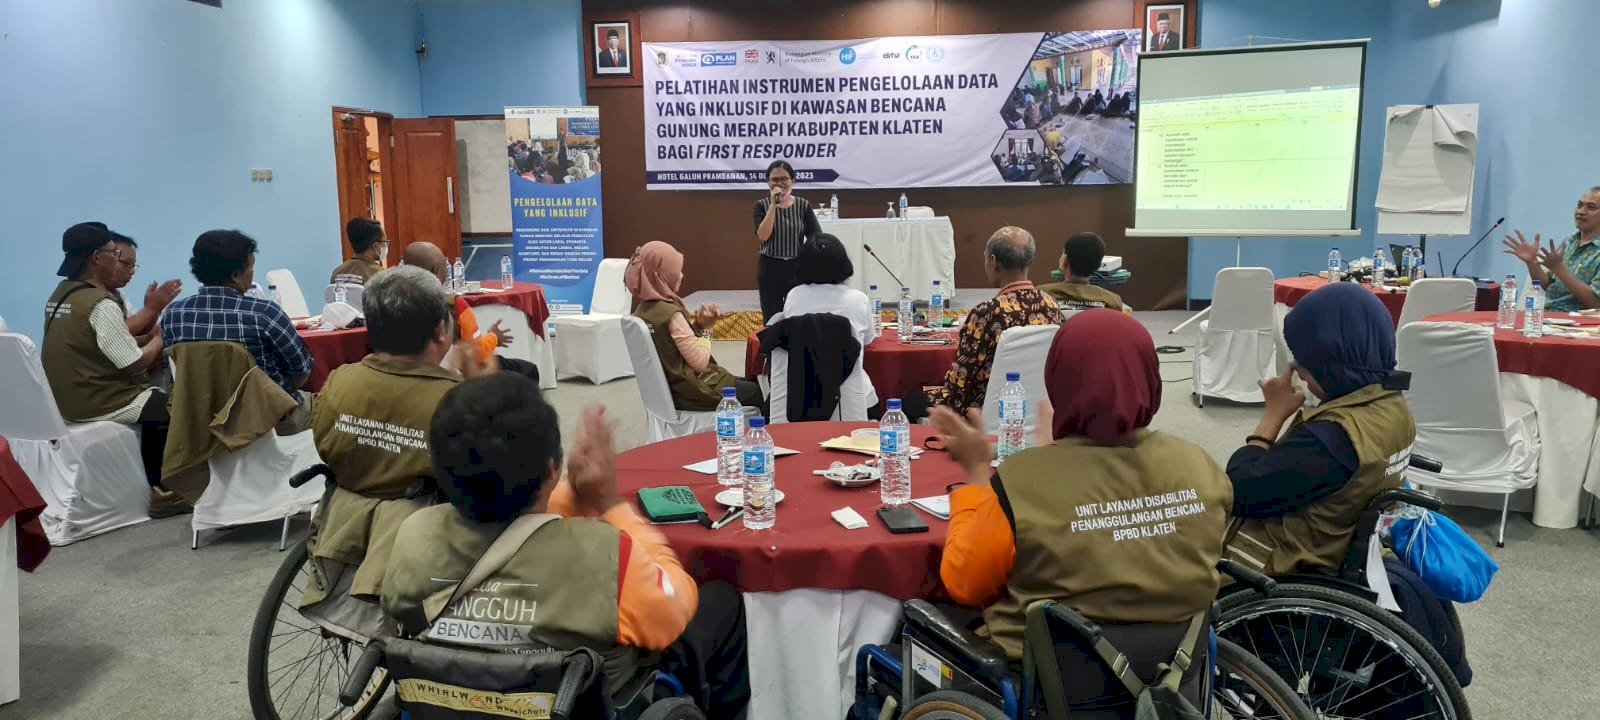 Pelatihan Instrumen Pengelolaan Data Yang Inklusif di Kawasan Bencana Gunung Merapi Kabupaten Klaten Bagi First Responder